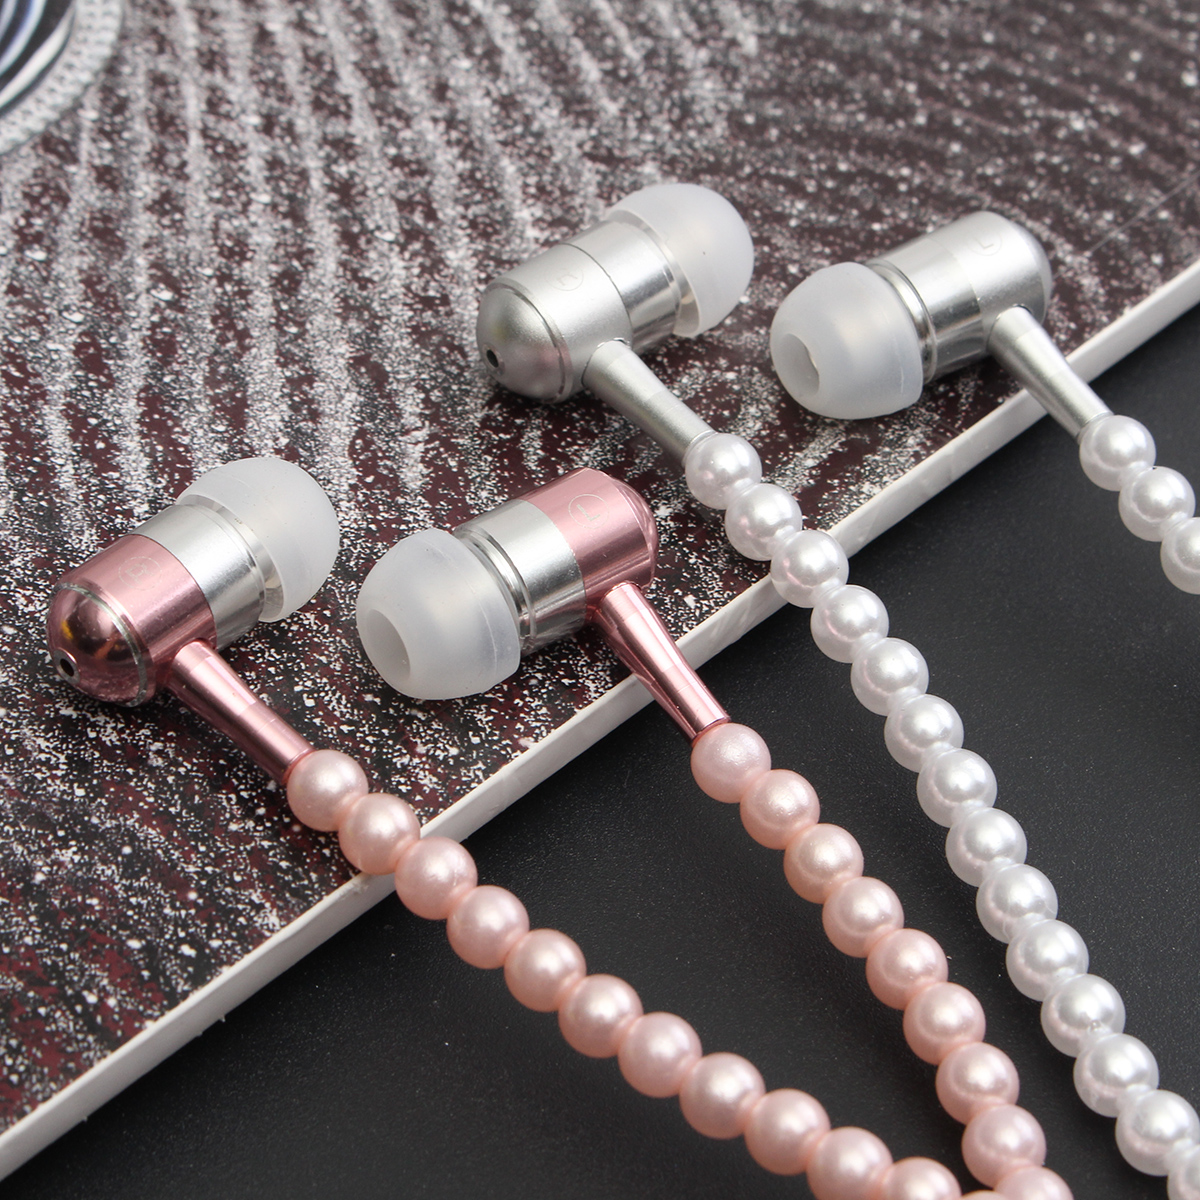 Pearls Earphones Jewellery Necklace 3.5mm Earphone Headphone For Smartphone